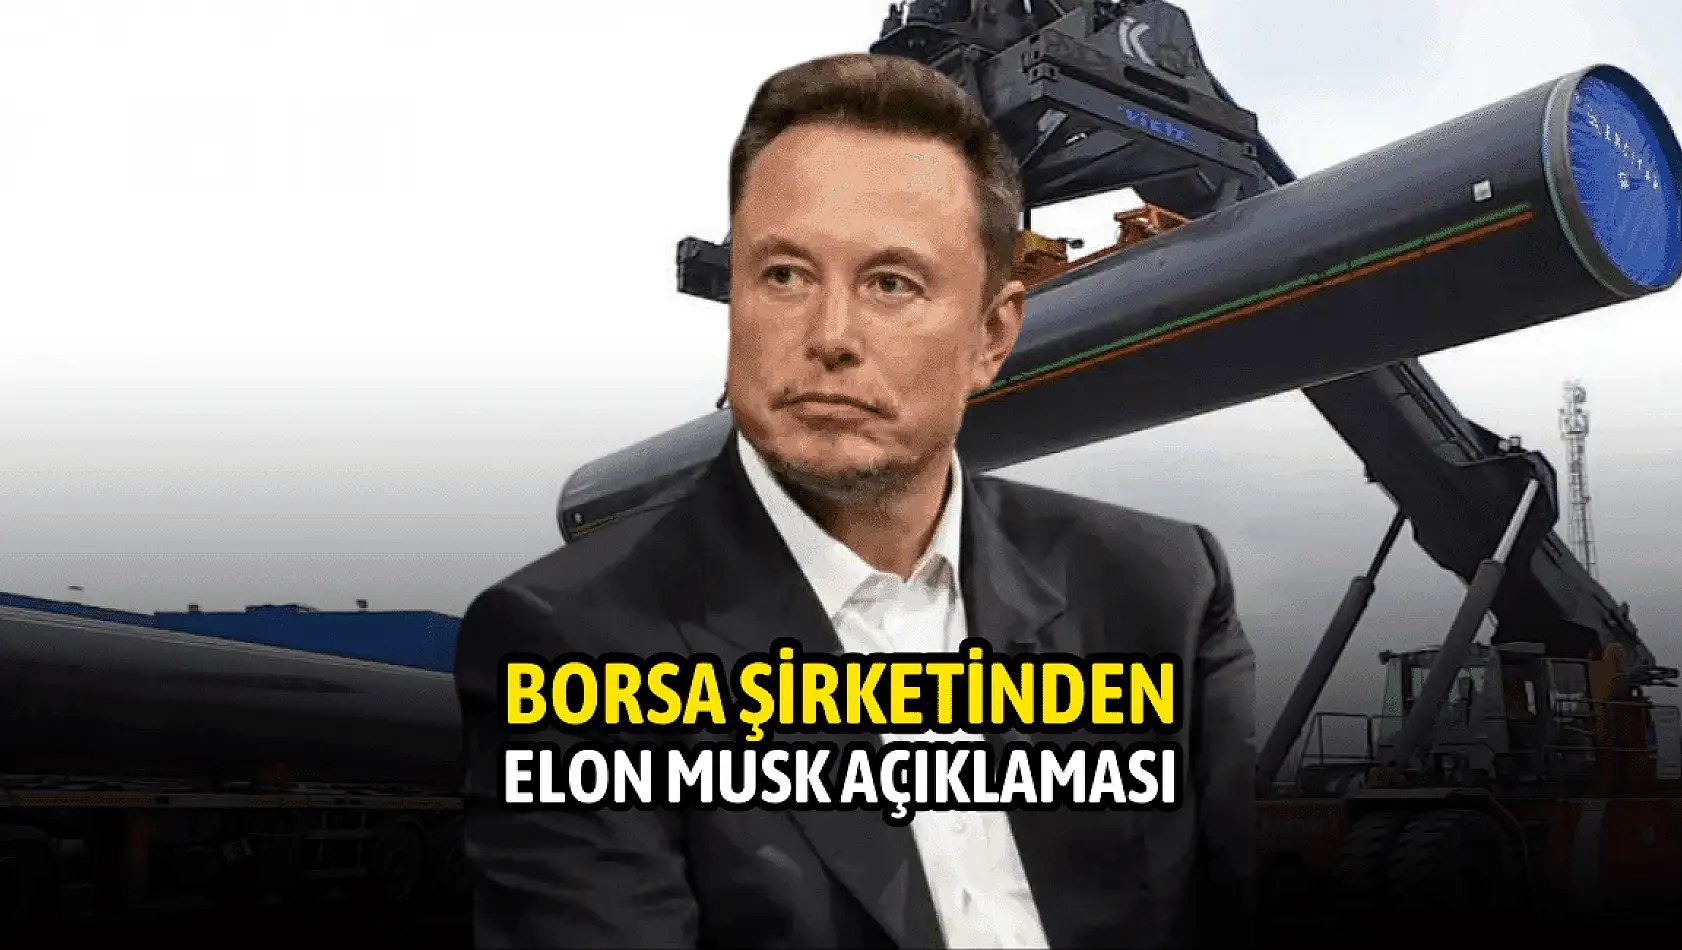 Erciyas Çelik Boru'dan Elon Musk açıklaması!